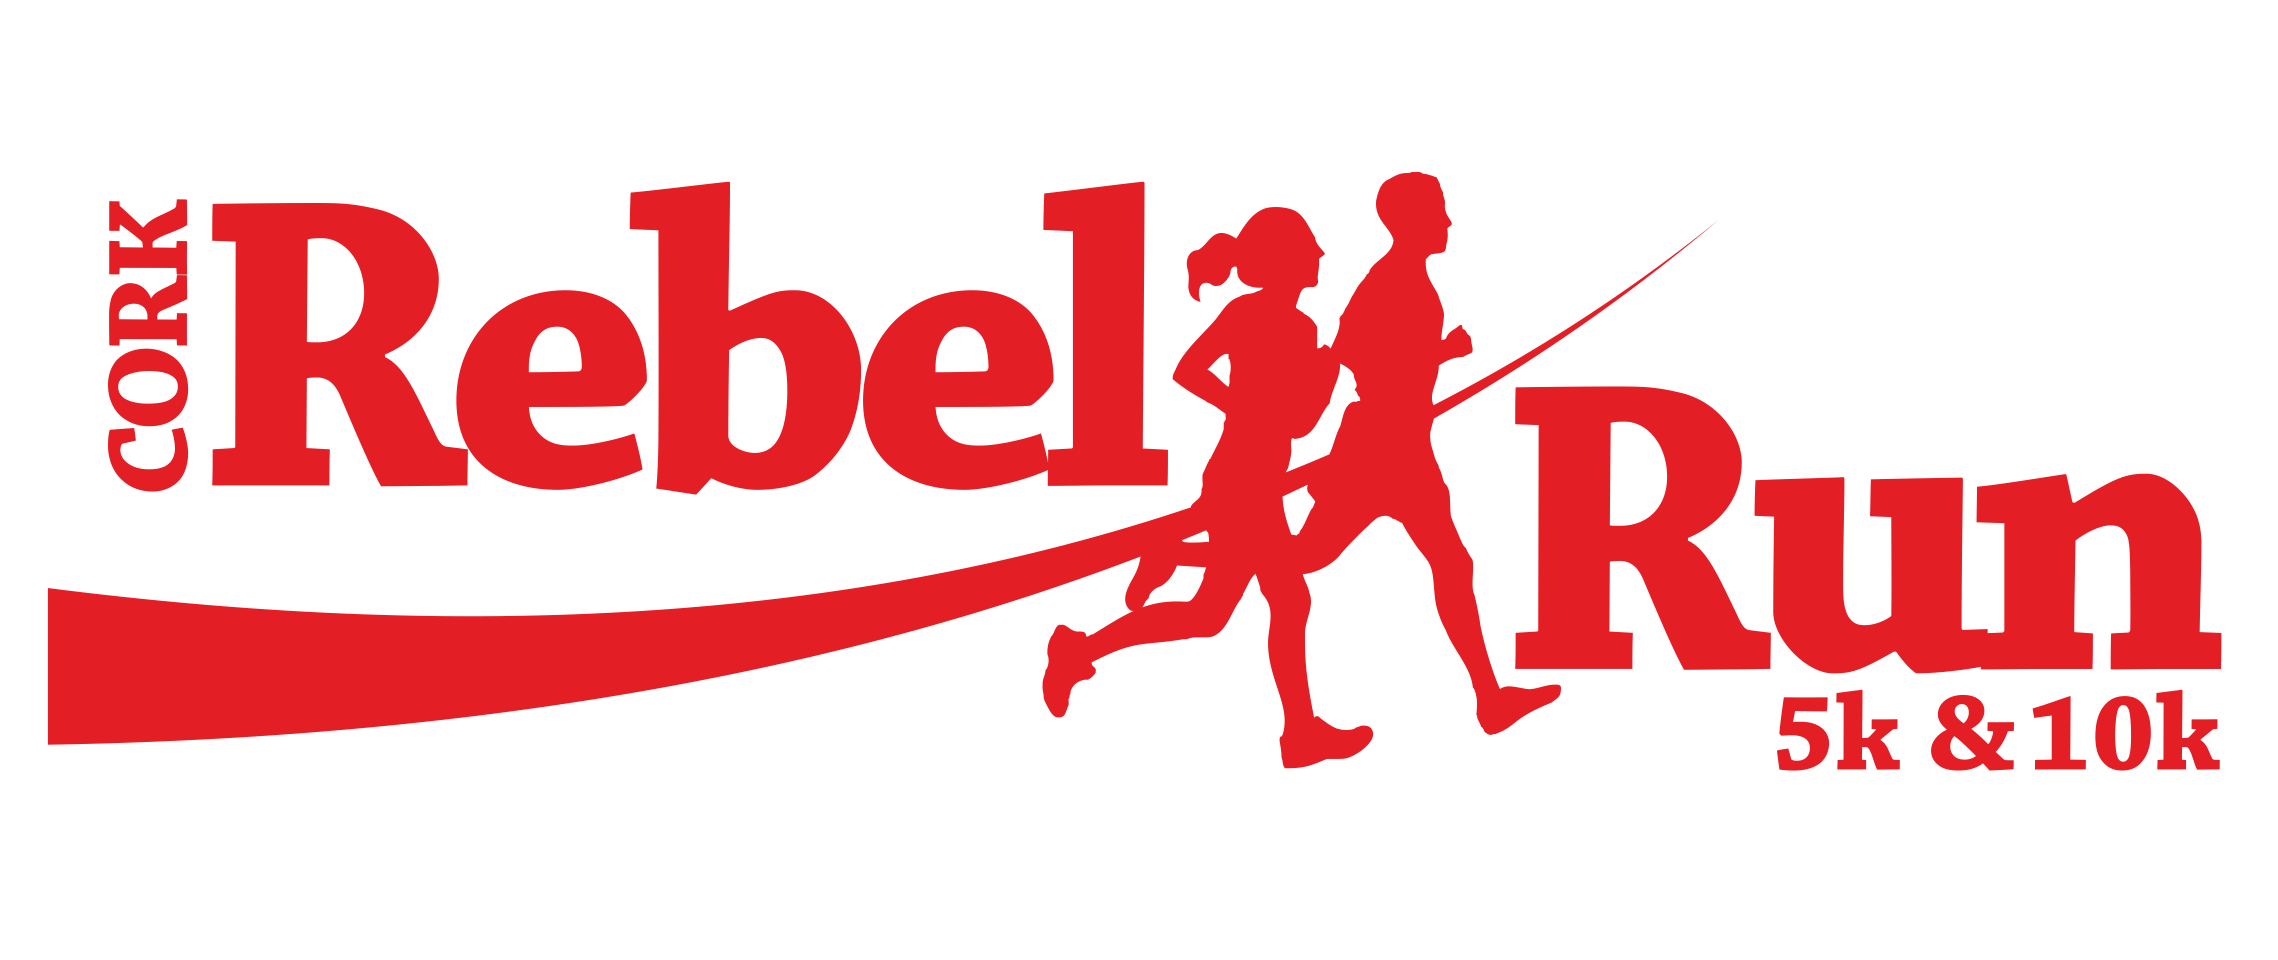 Rebel Run Logo